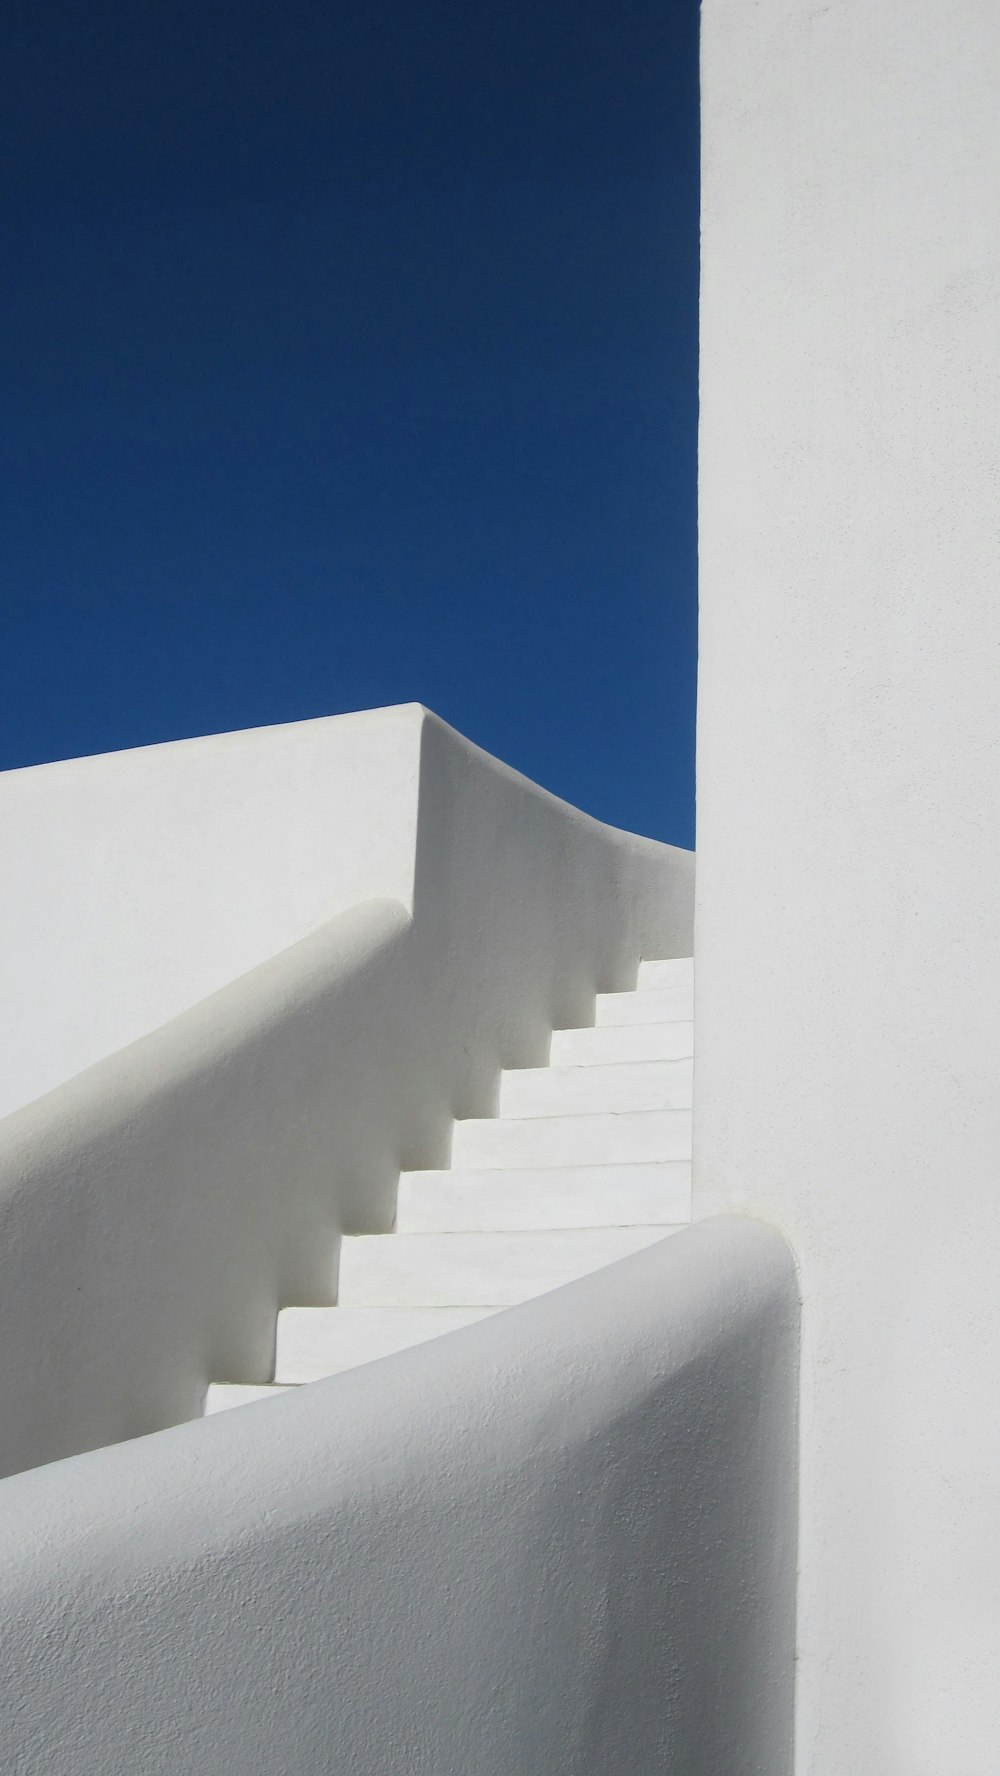 Escalera de hormigón blanco bajo el cielo azul durante el día